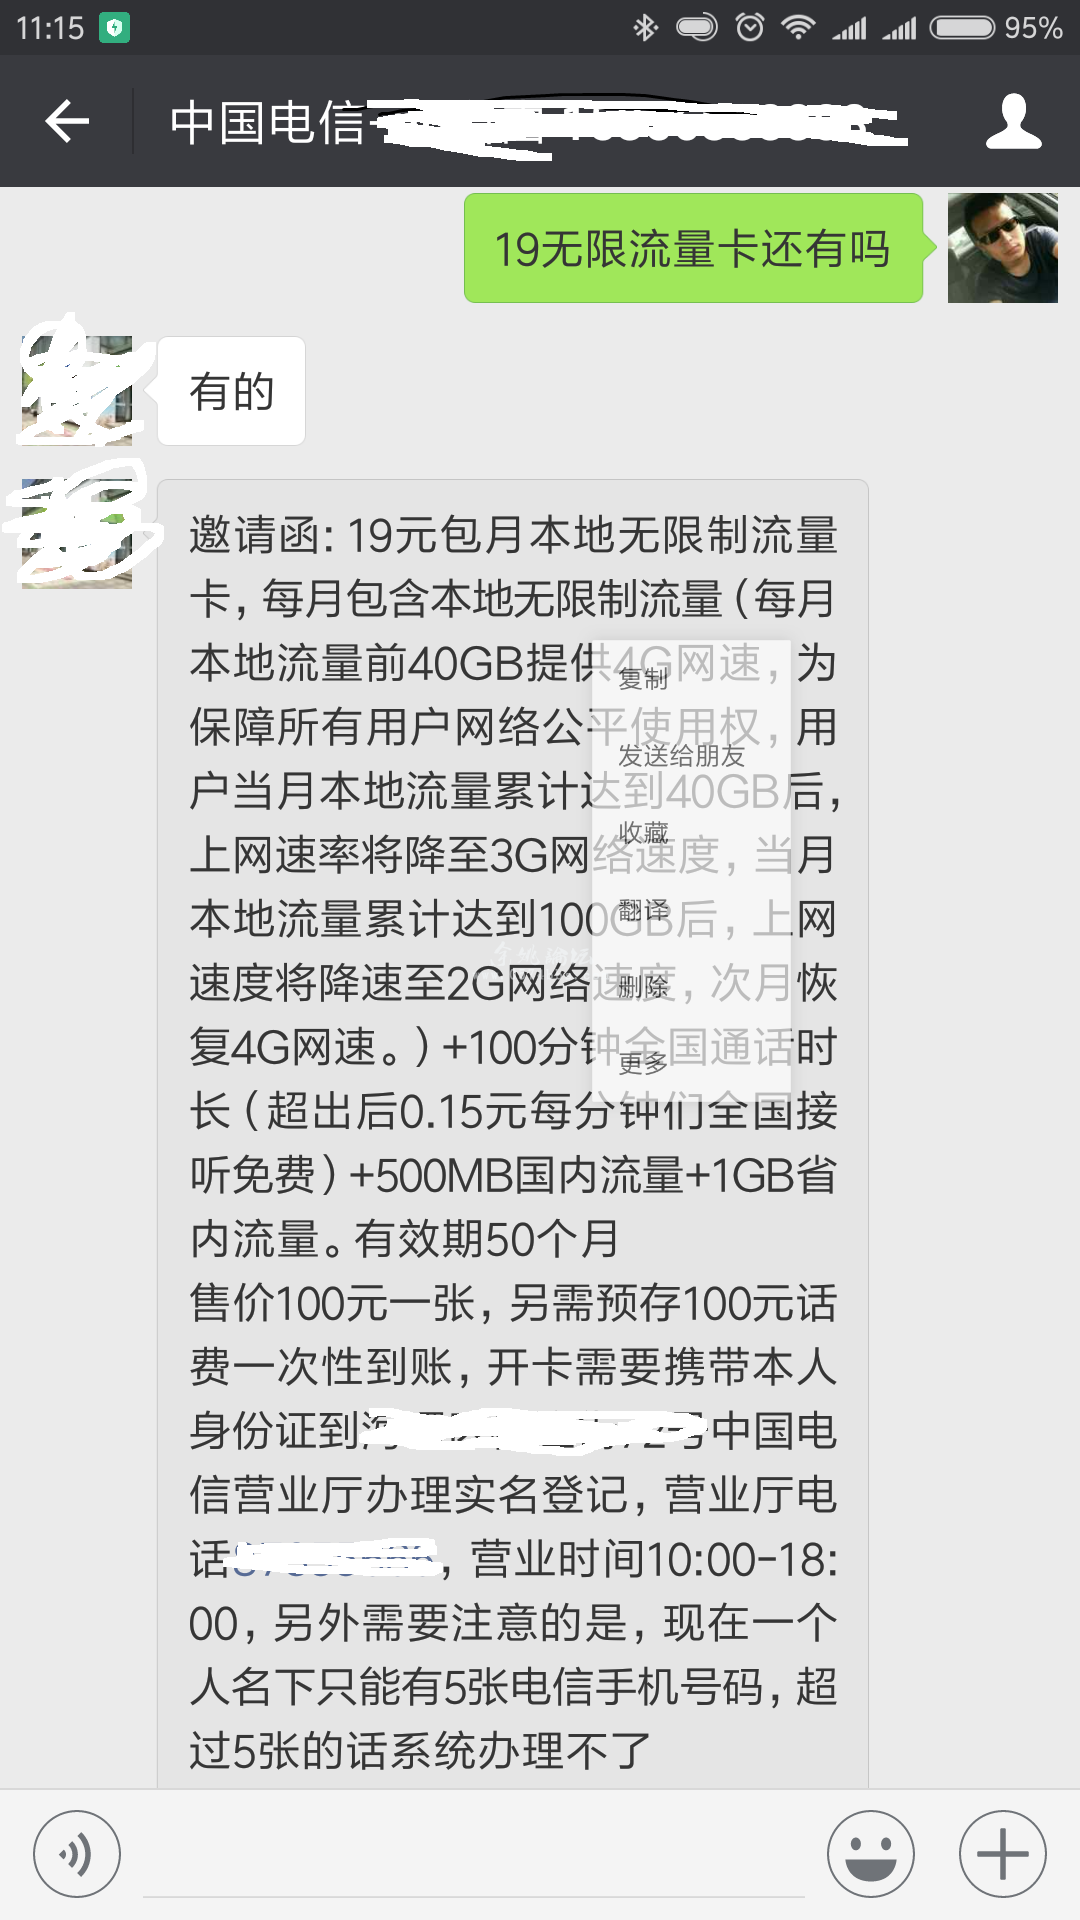 Screenshot_2017-10-20-11-15-38-699_com.tencent.mm.png